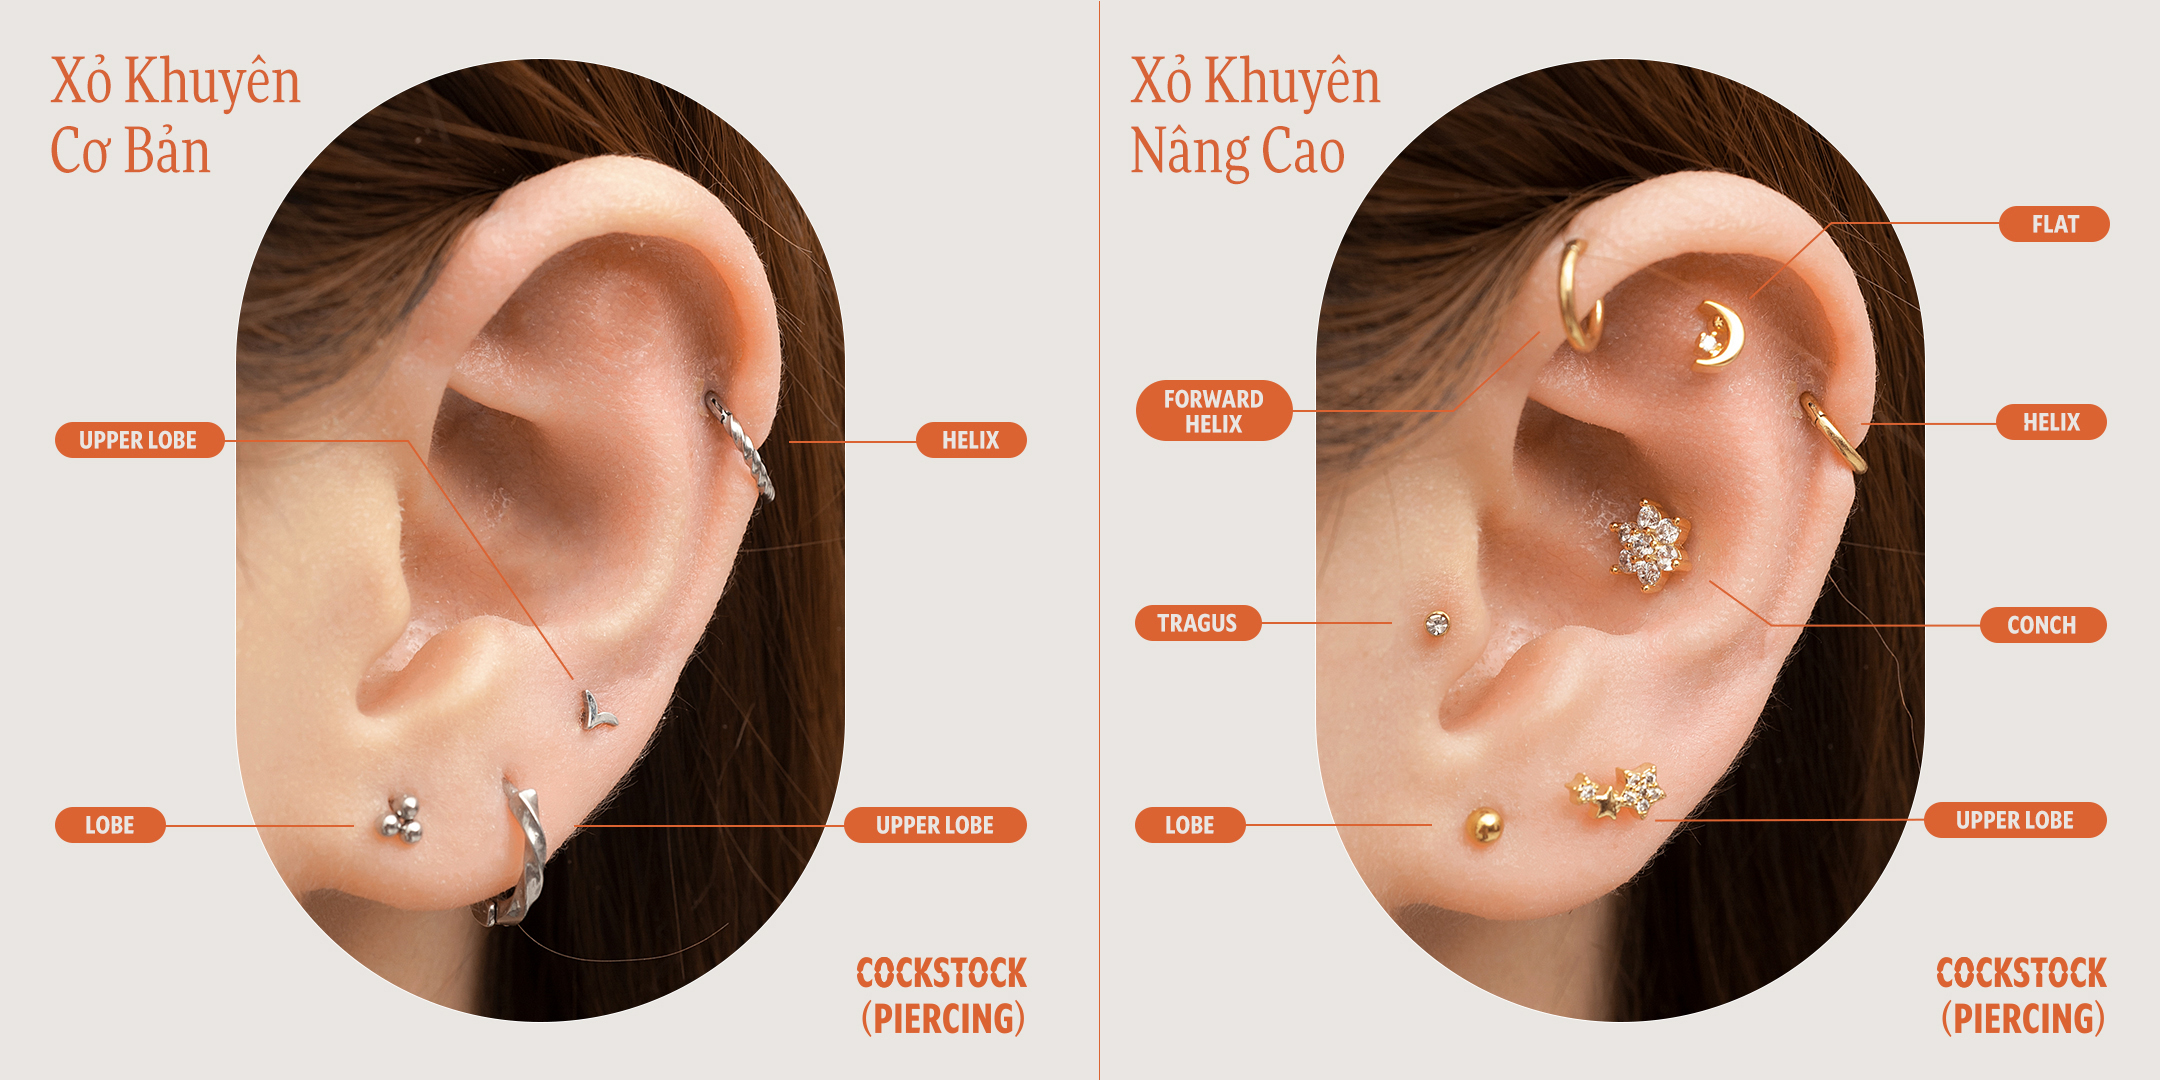 Những điều cần biết về bấm lỗ tai, xỏ khuyên tai | Thời Đại